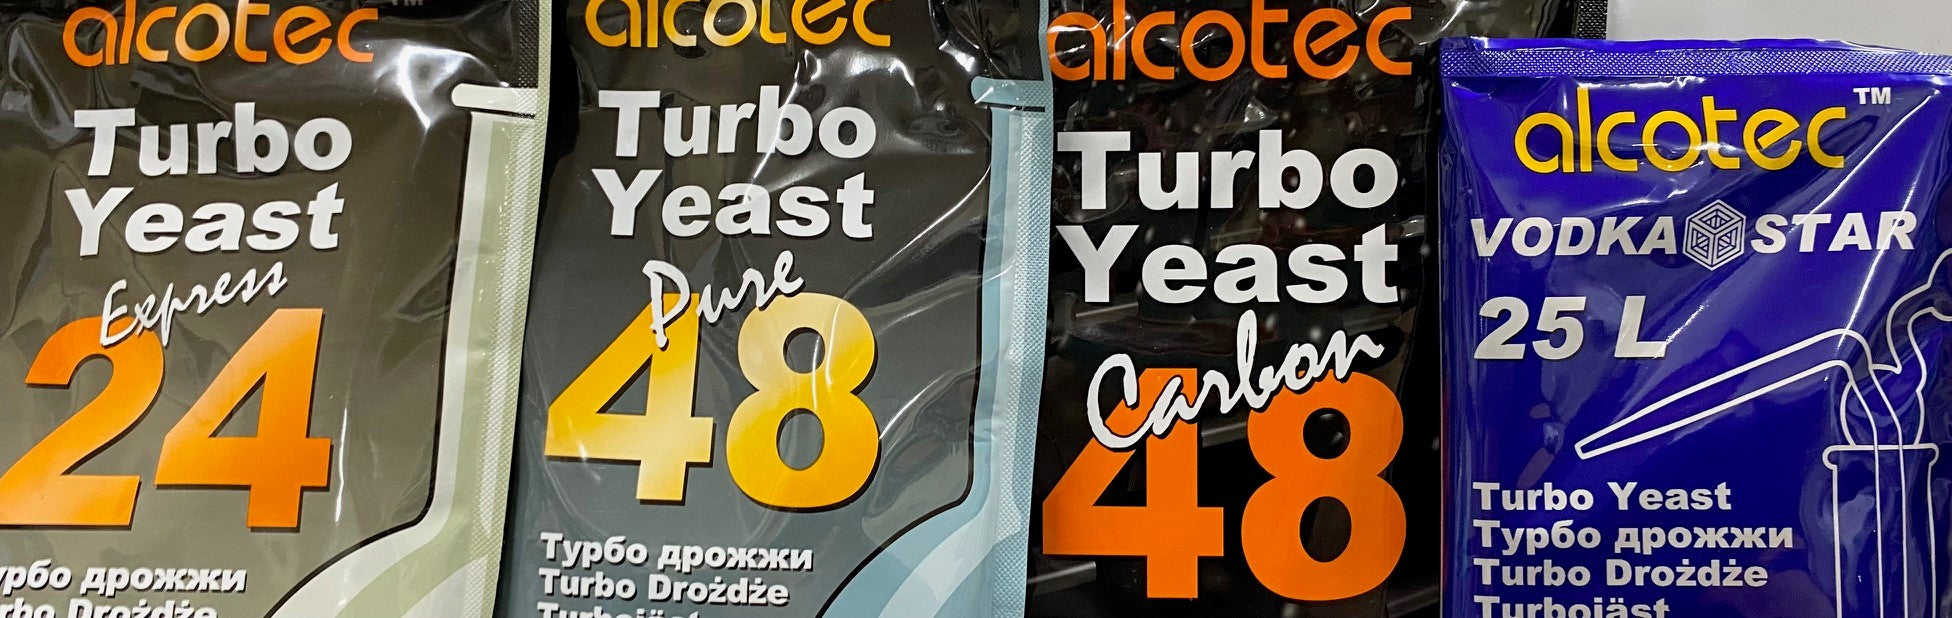 Alcotec Turbo Spirit Yeast